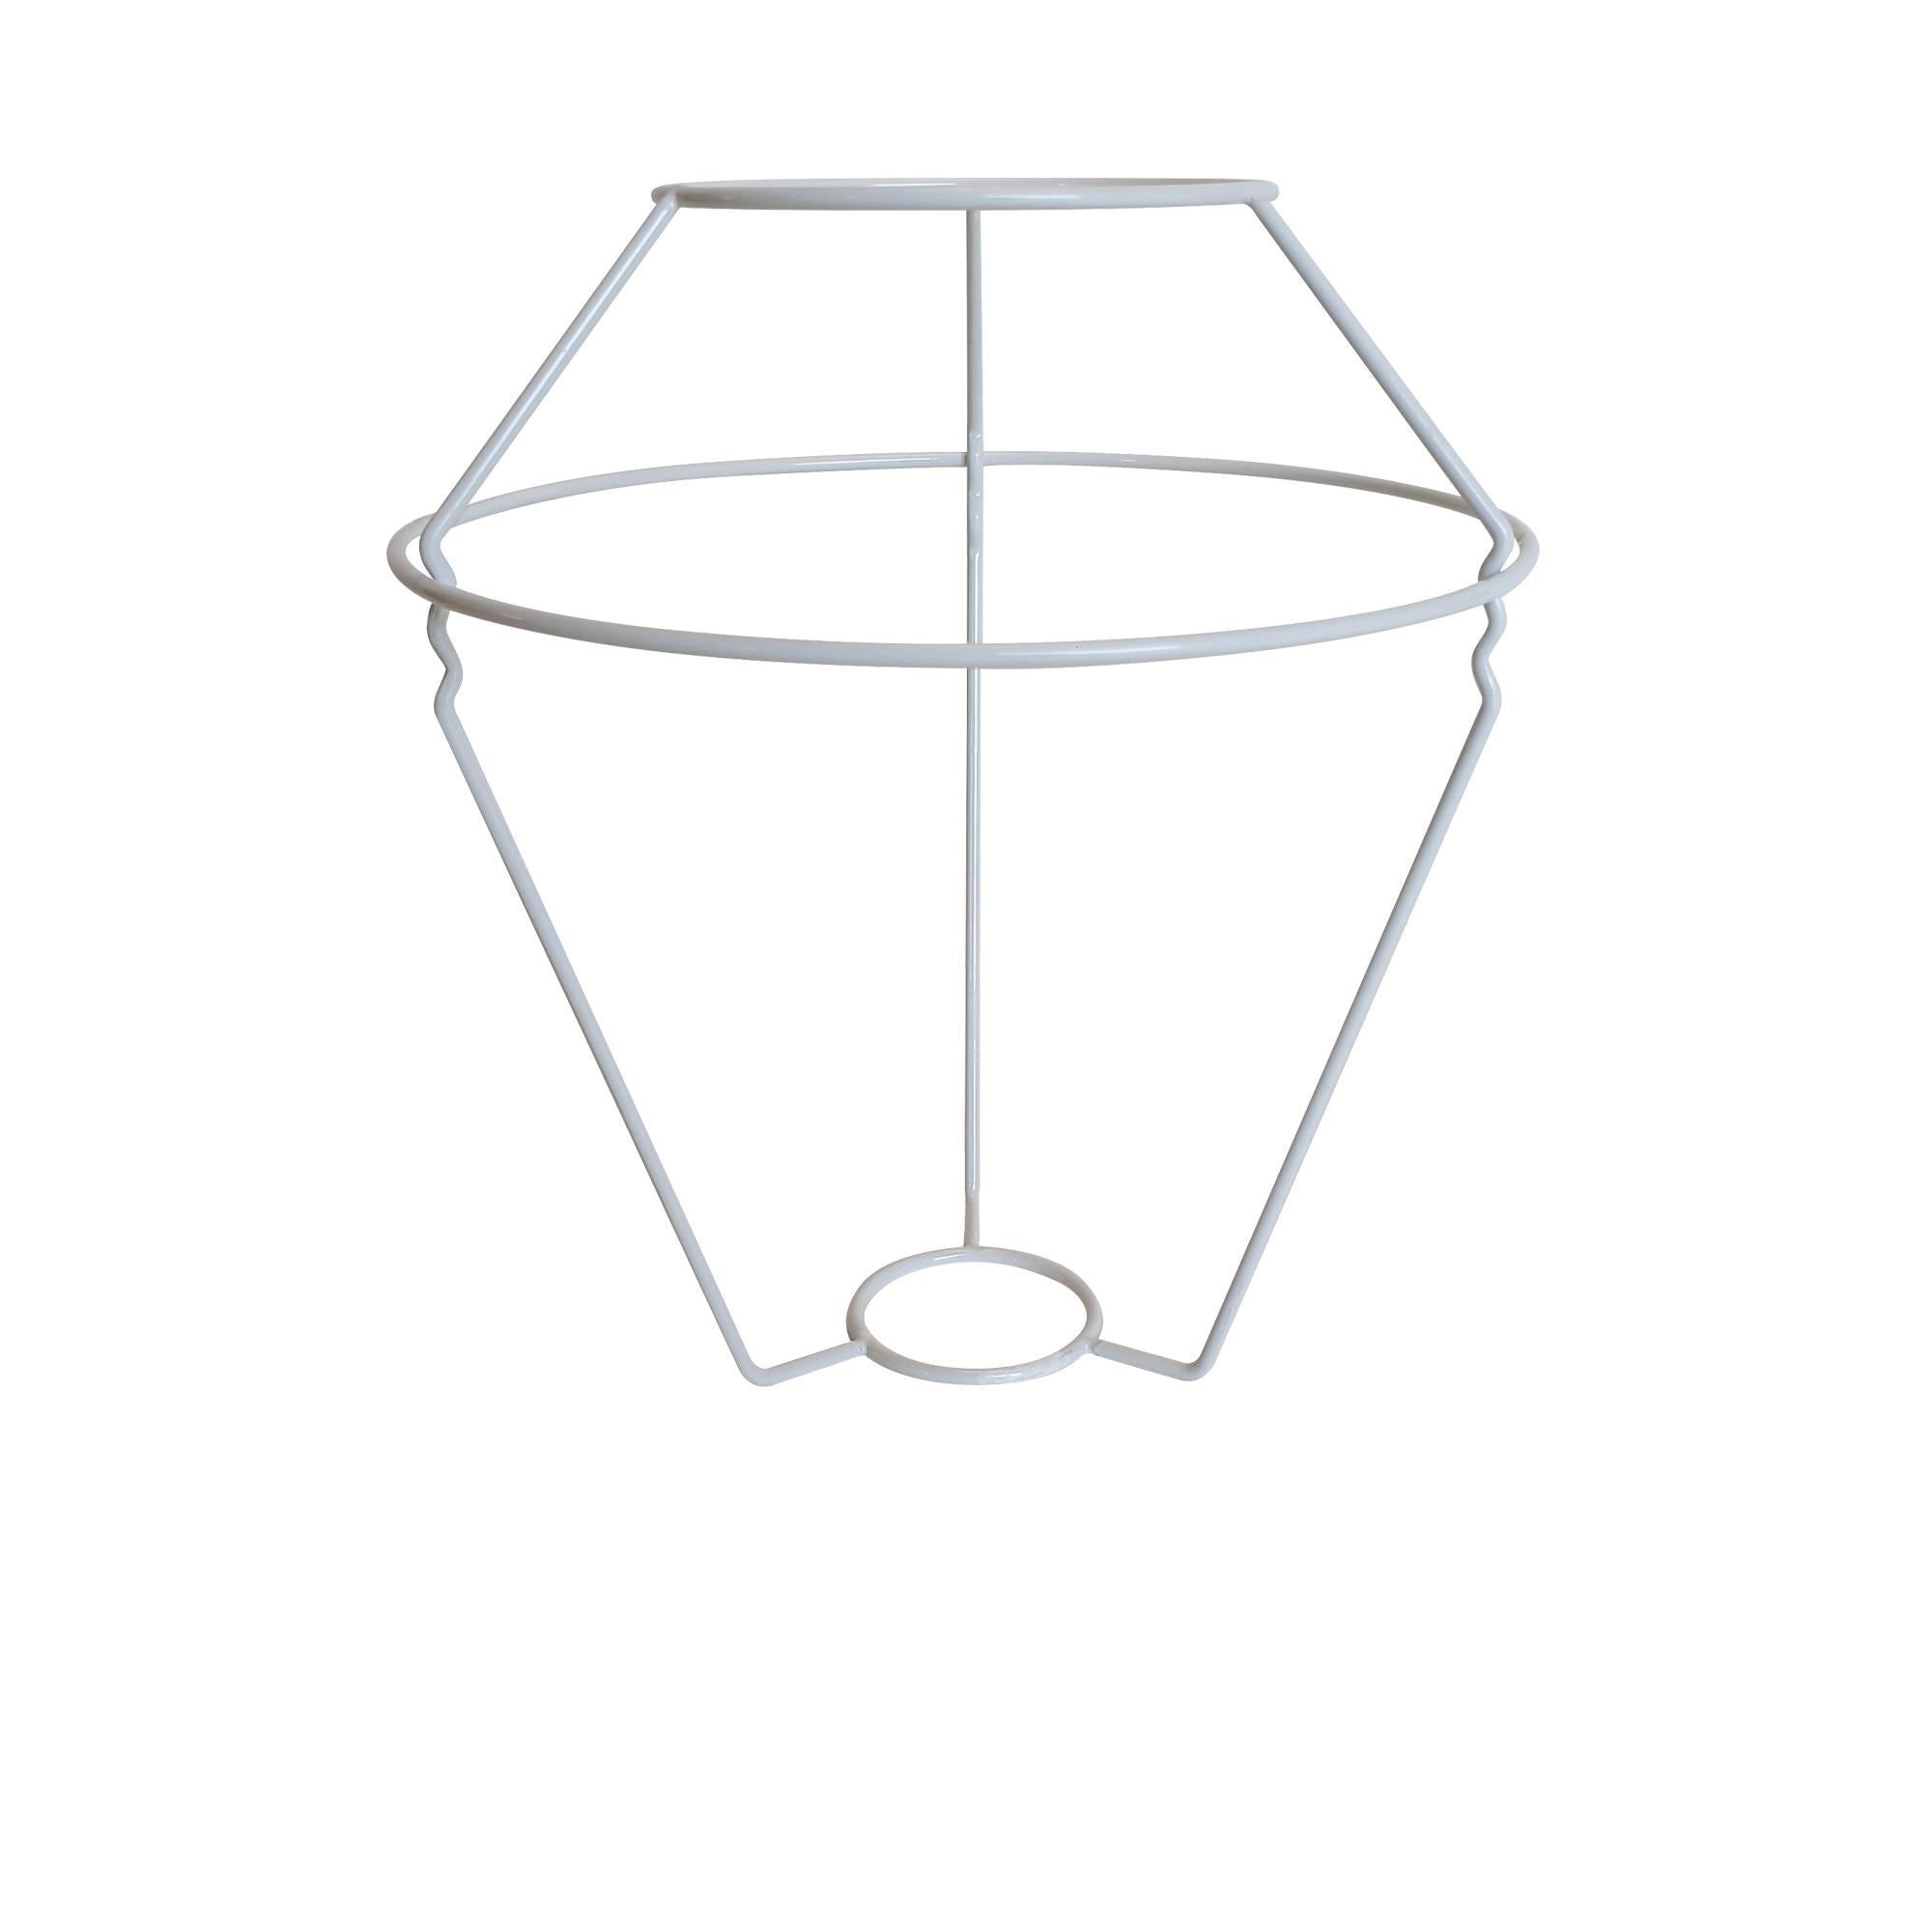 Le Klint 406 C, Lámpara de mesa y piso, trípode